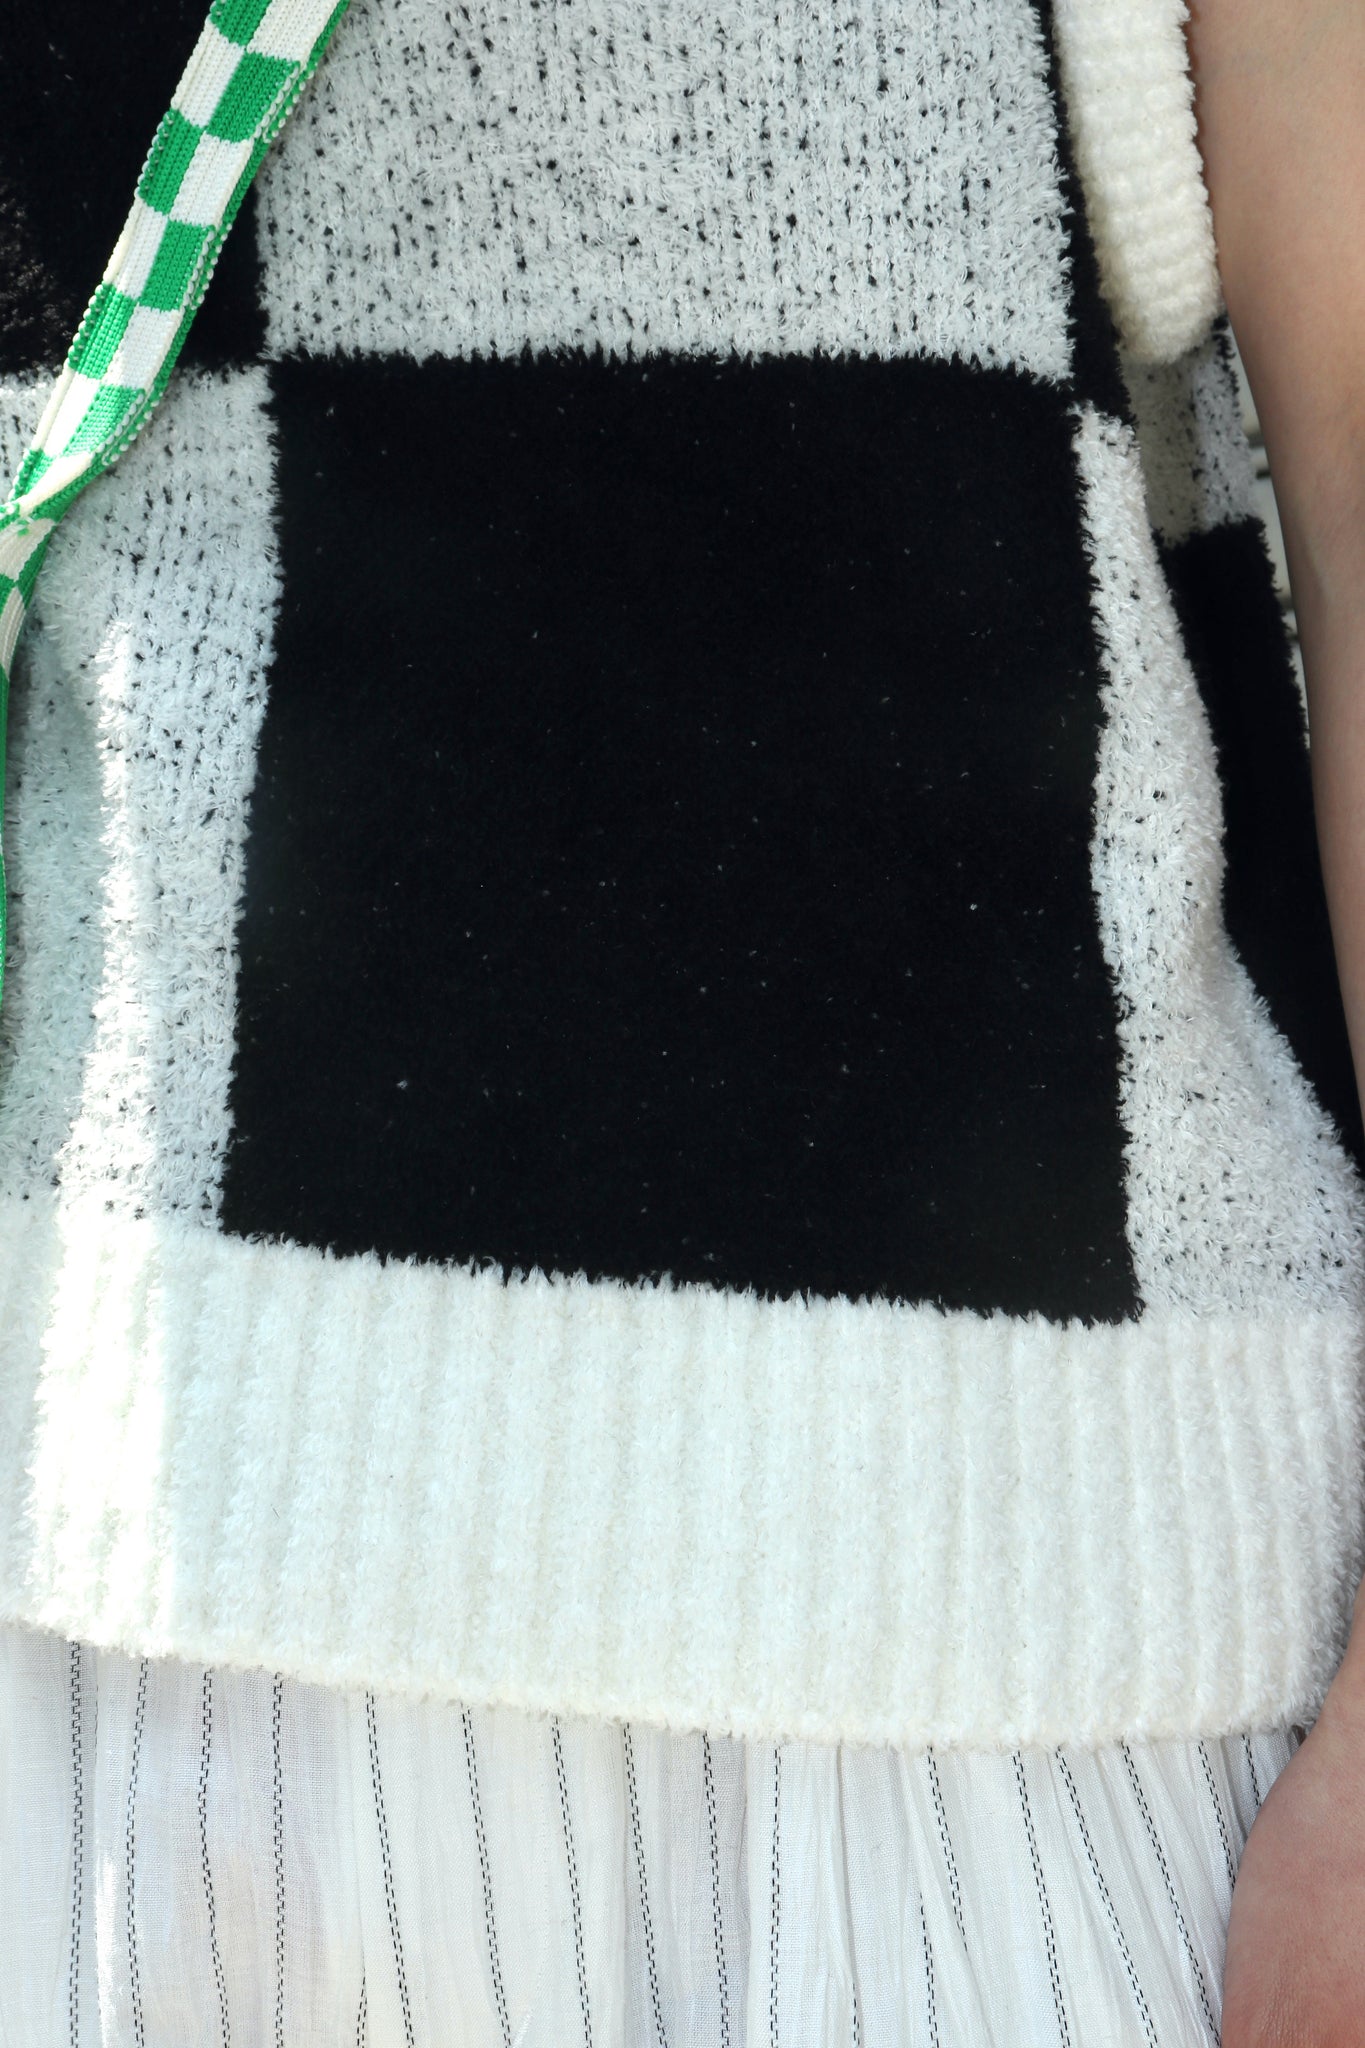 littlebigの22ssのPattern Knit Vest を使用したスタイリング画像